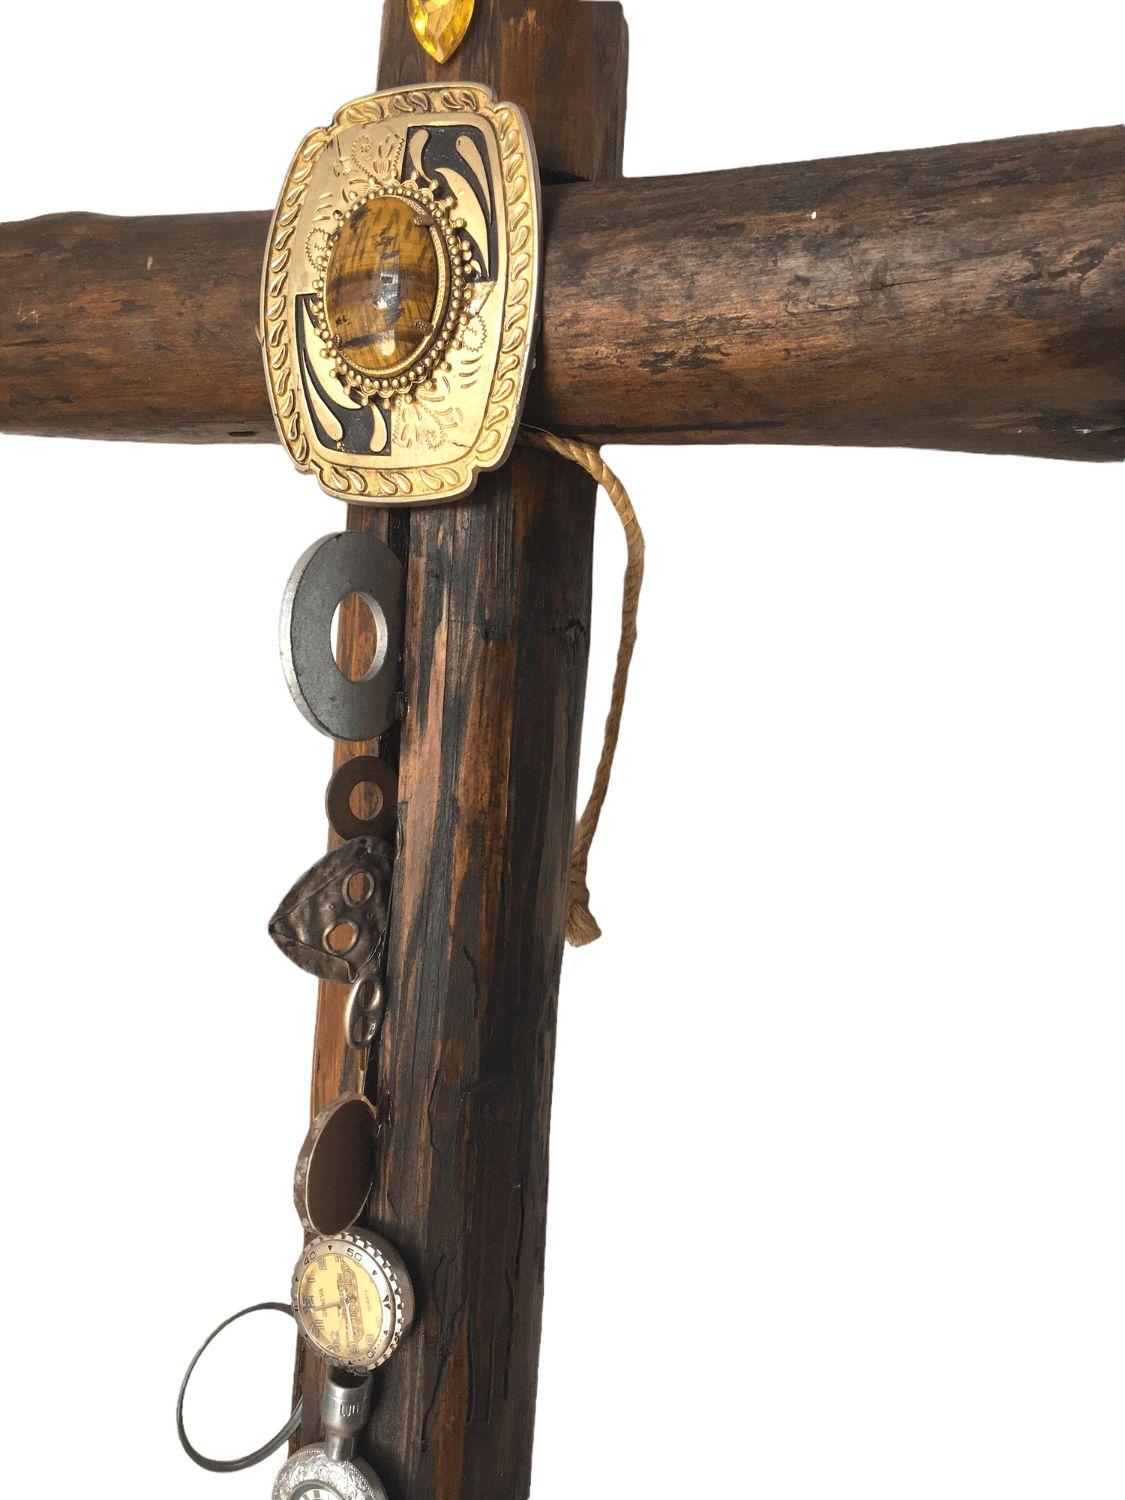 Vintage Large Wood Logs Kreuz mit Metall und Glas Dekorationen. $975
 
Dieses große Kreuz ist aus einem schönen Paar dunkler Holzstämme gefertigt, die dann ausgiebig mit Metallelementen aller Art, insbesondere Uhren, Nägeln und Ringen, verziert